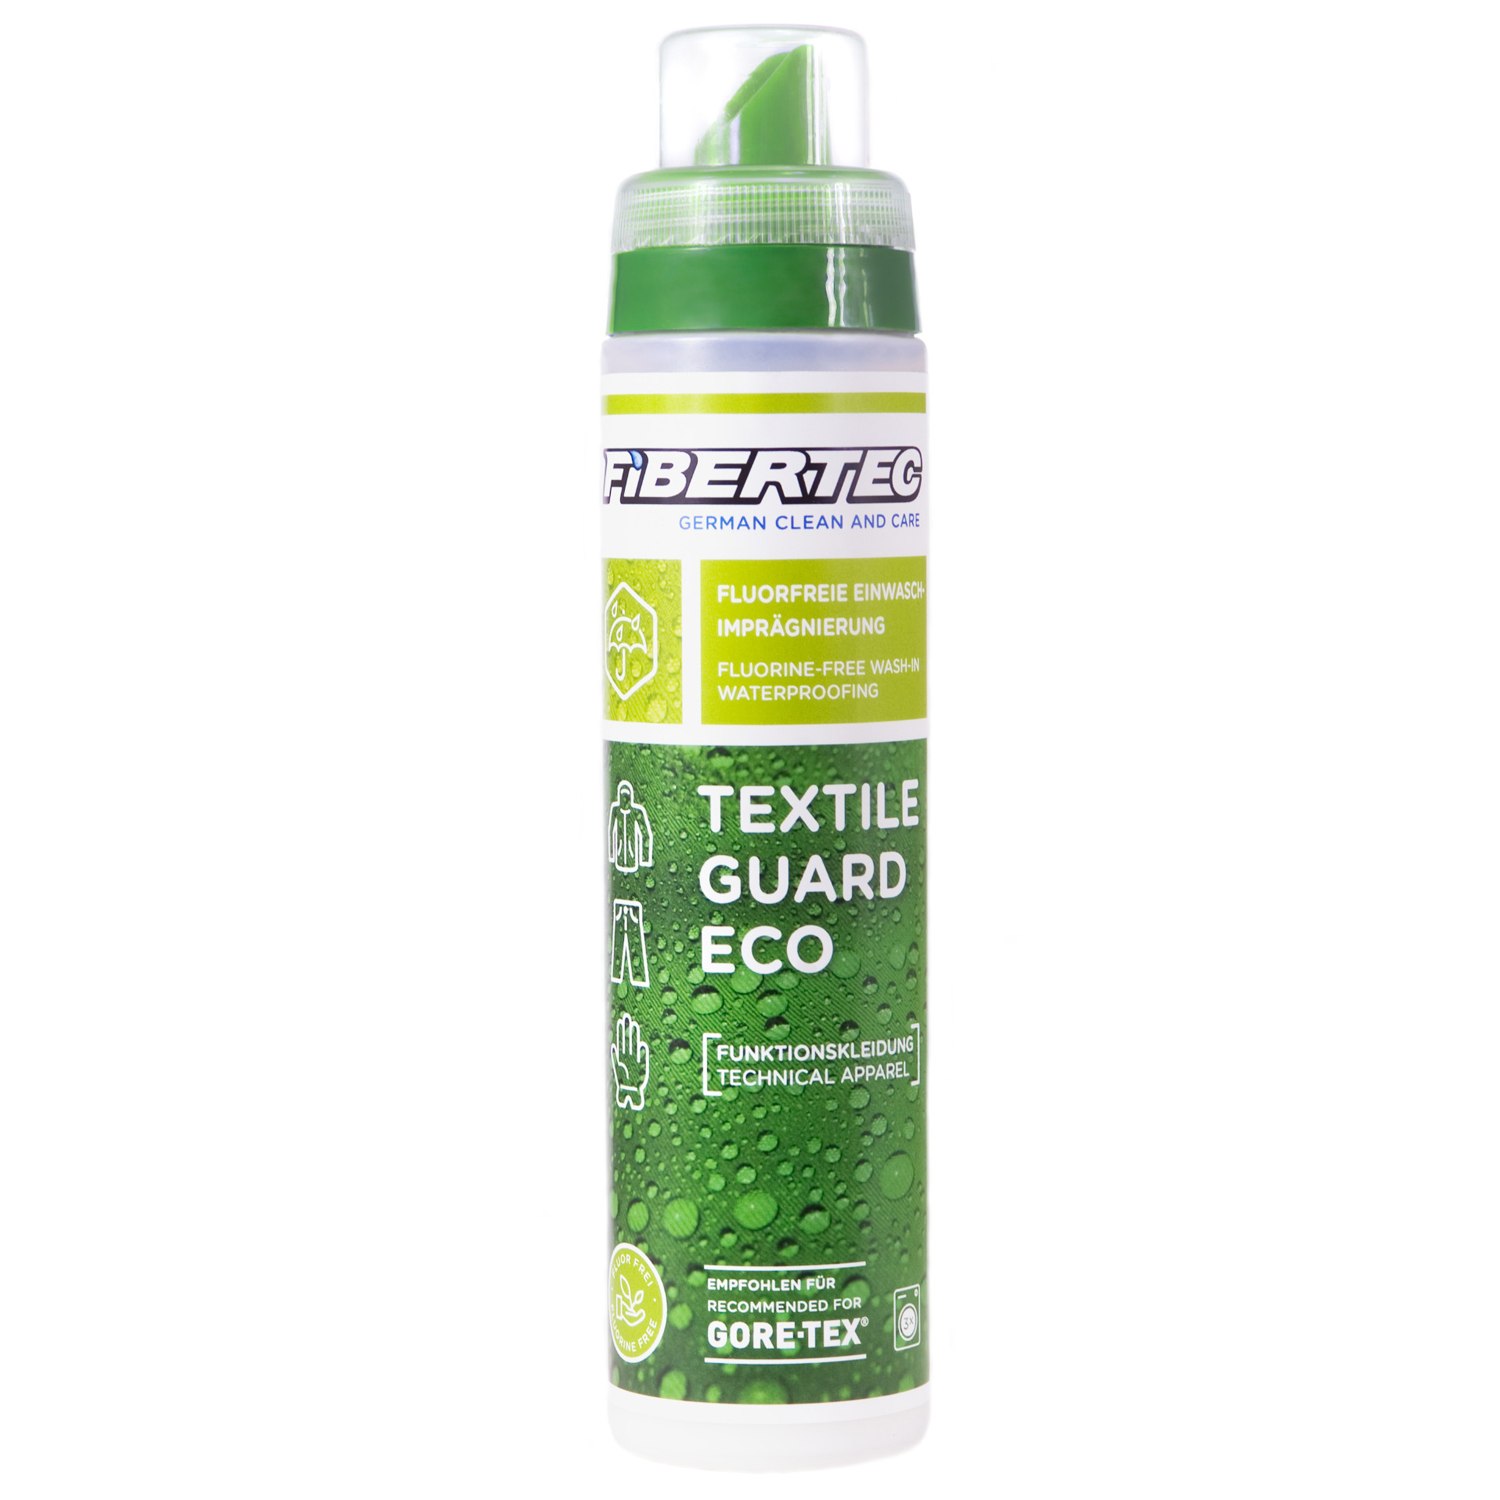 Productfoto van Fibertec Textile Guard Eco Wash-In Impregnation 250 ml